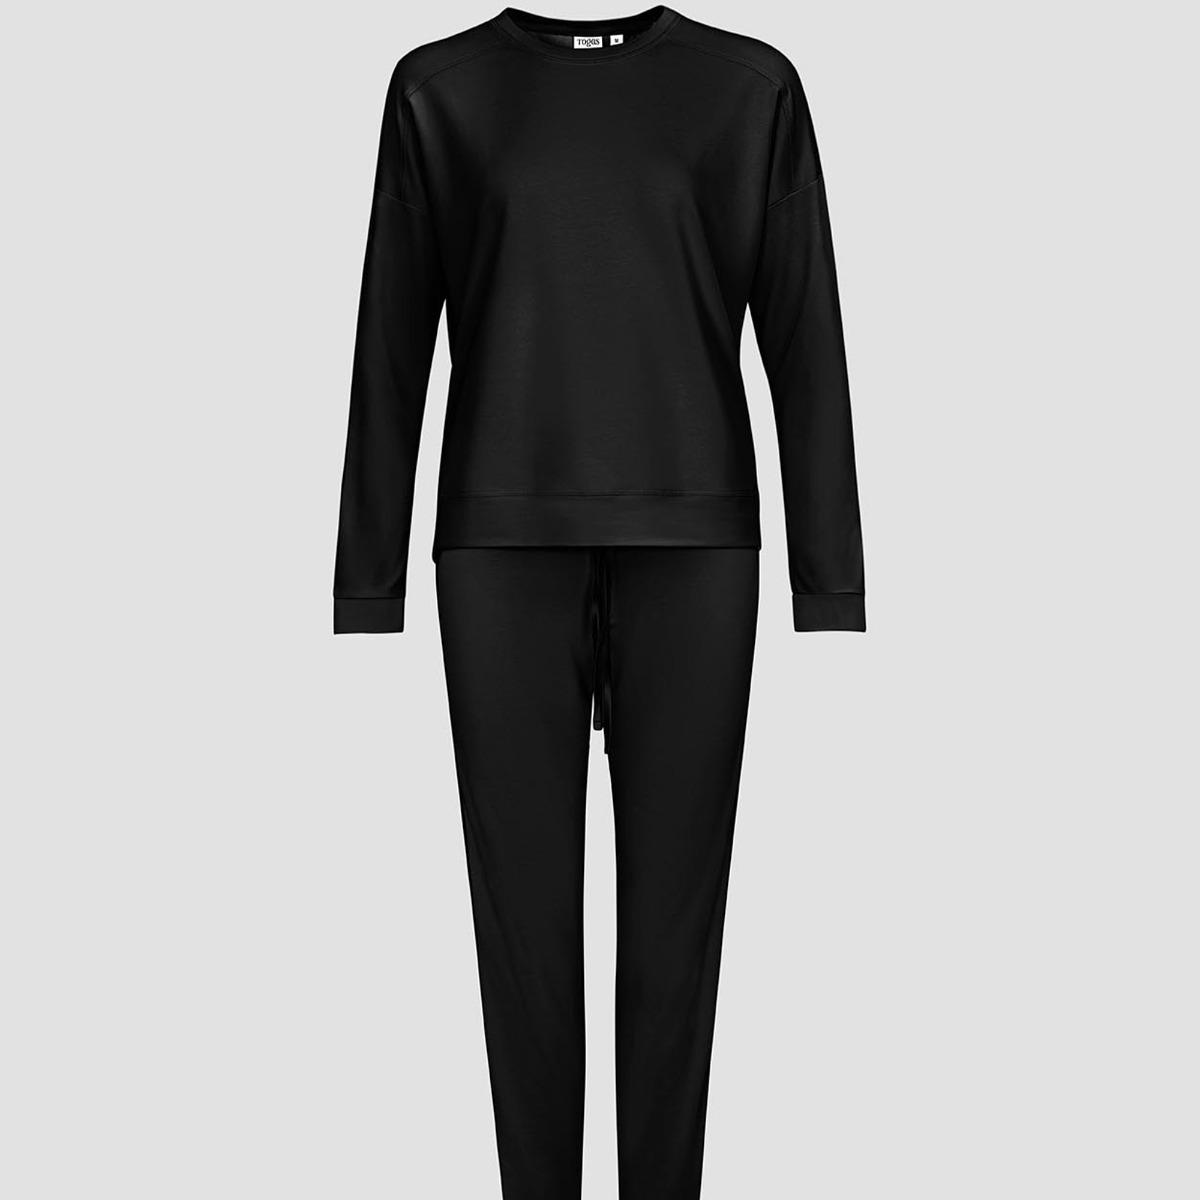 Женская пижама Togas Рене чёрная XL (50) пижама togas рене серая женская l 48